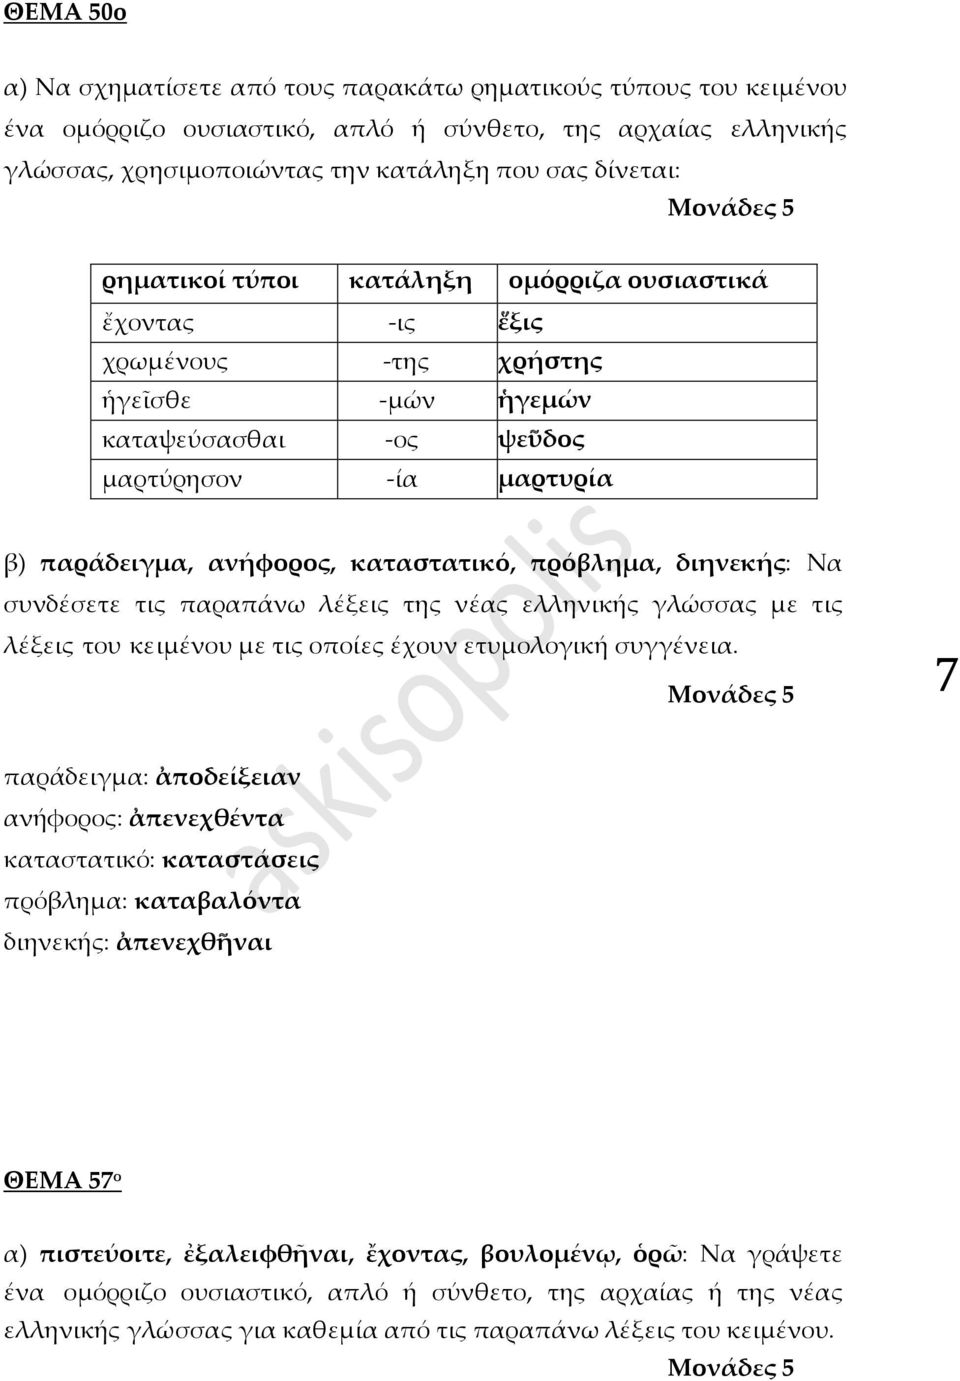 πρόβλημα, διηνεκής: Να συνδέσετε τις παραπάνω λέξεις της νέας ελληνικής γλώσσας με τις λέξεις του κειμένου με τις οποίες έχουν ετυμολογική συγγένεια.